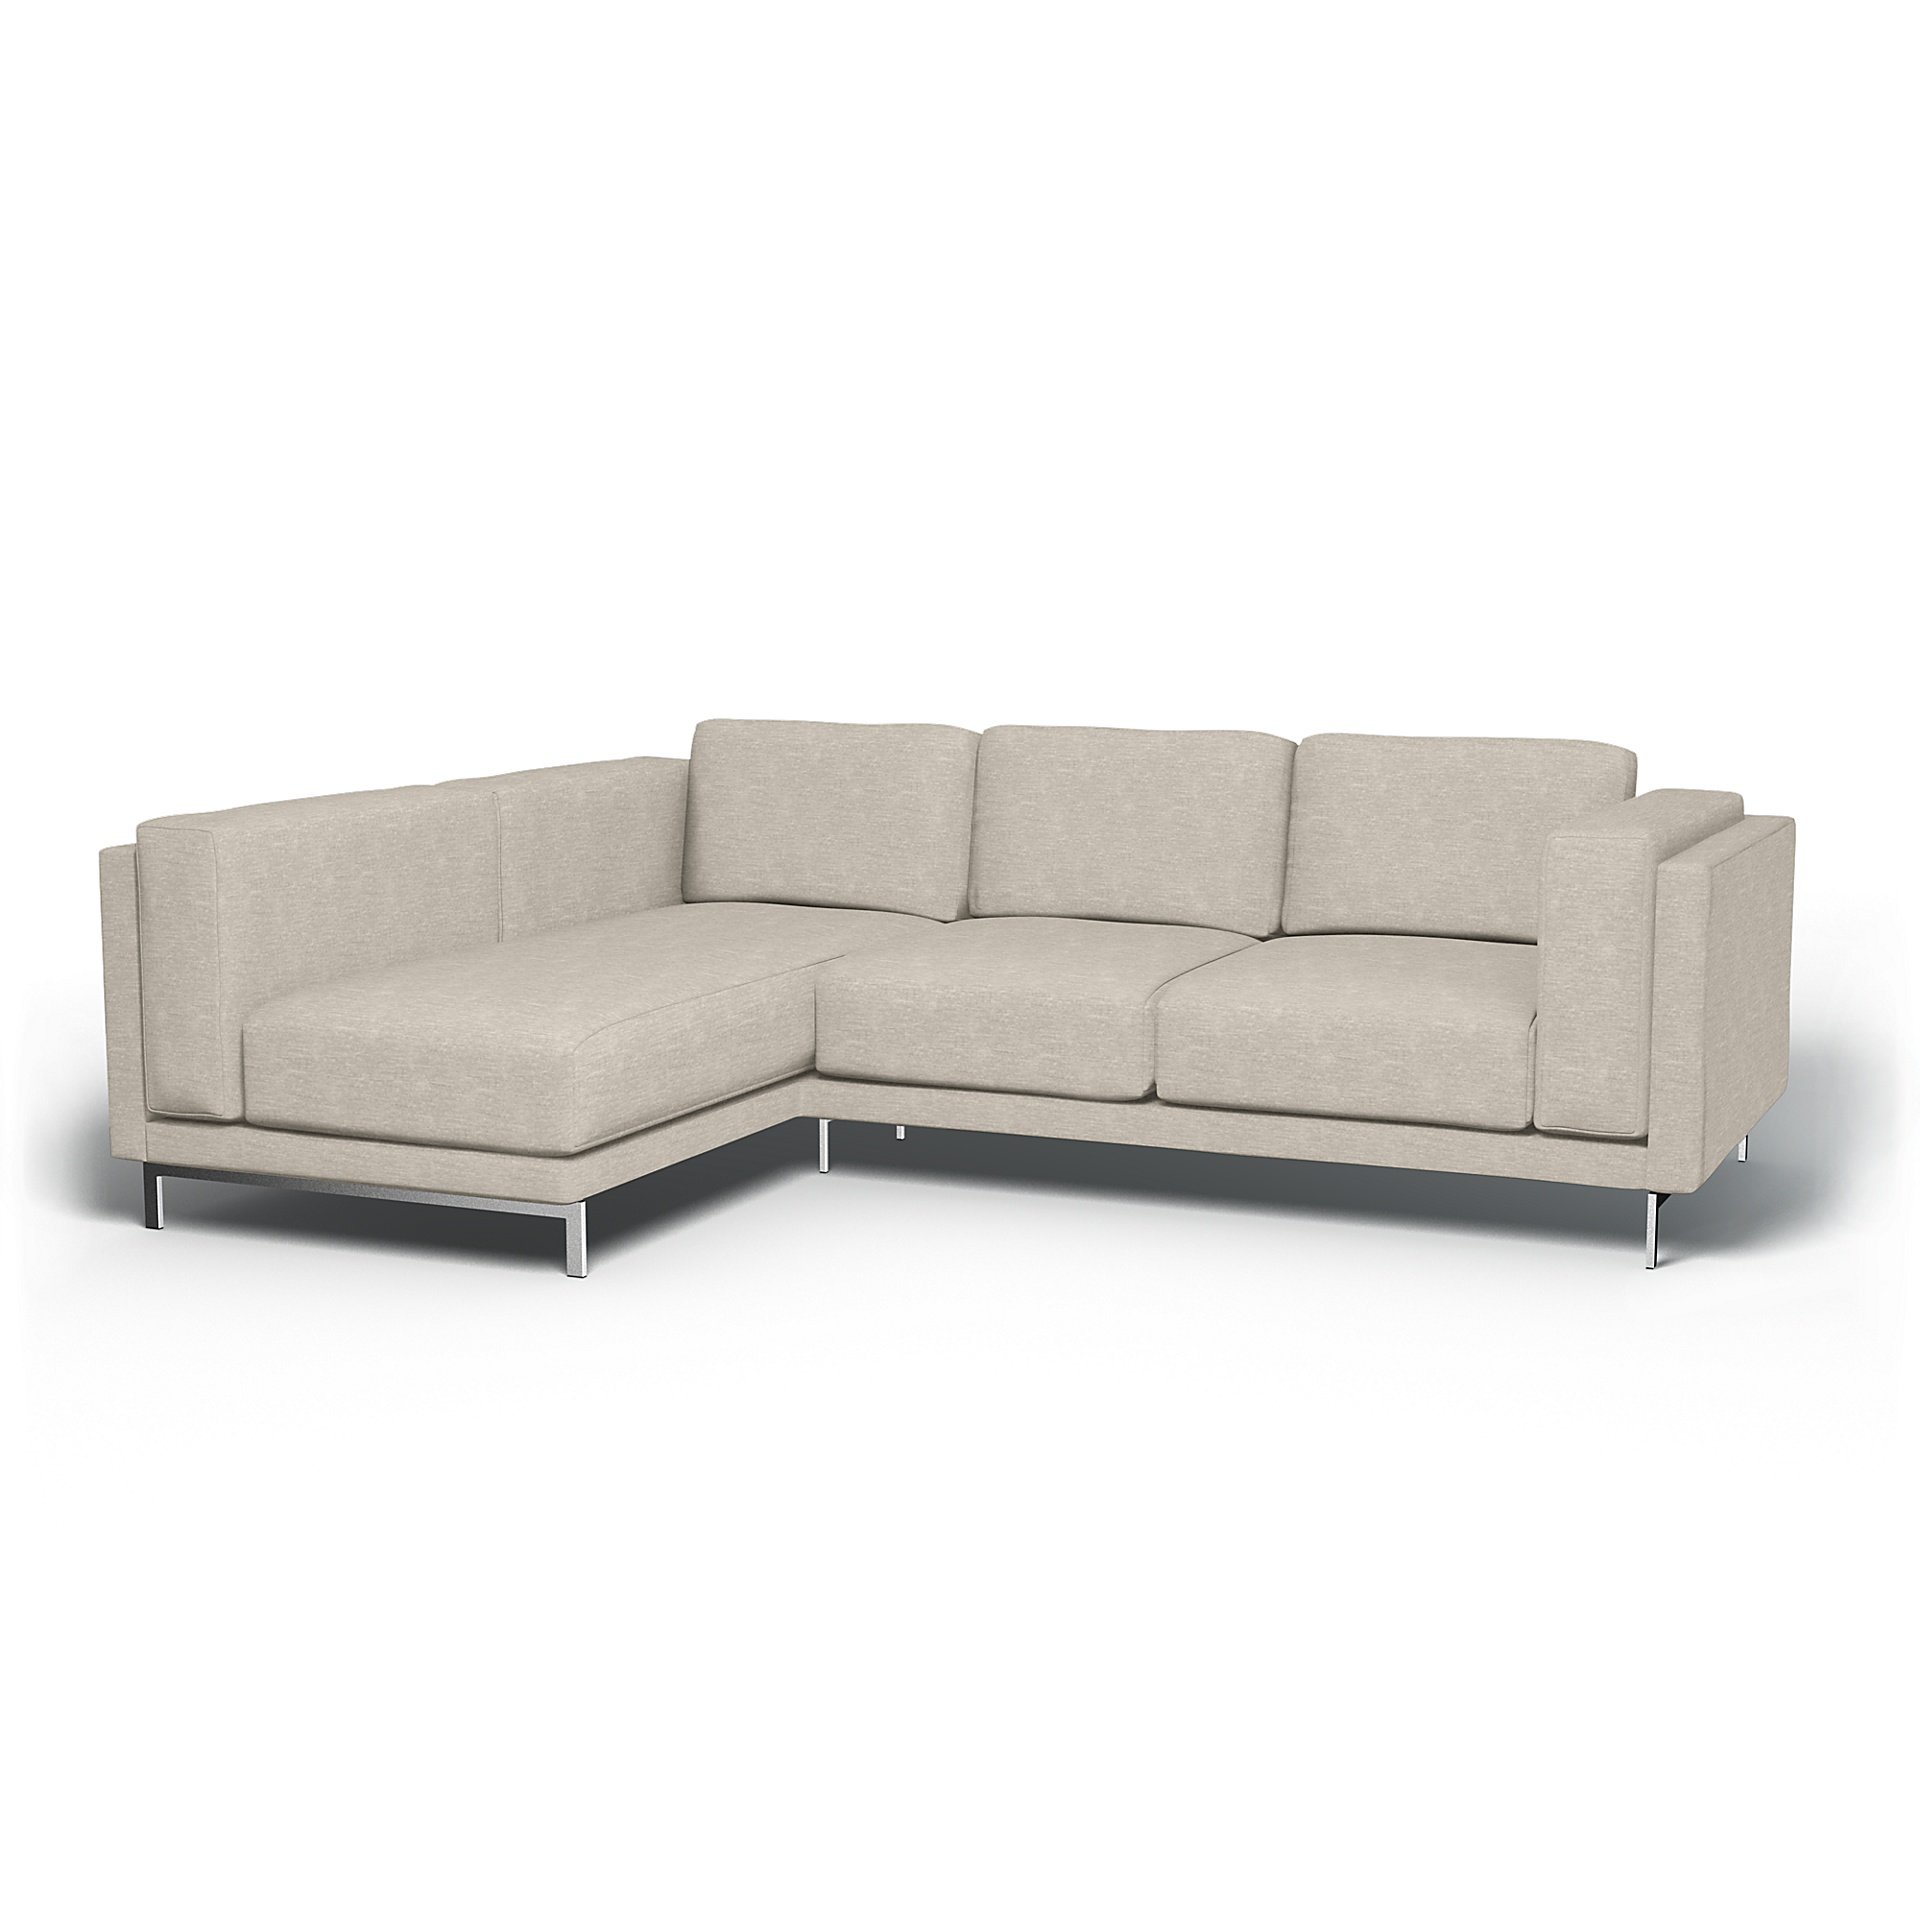 IKEA - Nockeby 3 Seater Sofa with Left Chaise Cover, Natural White, Velvet - Bemz